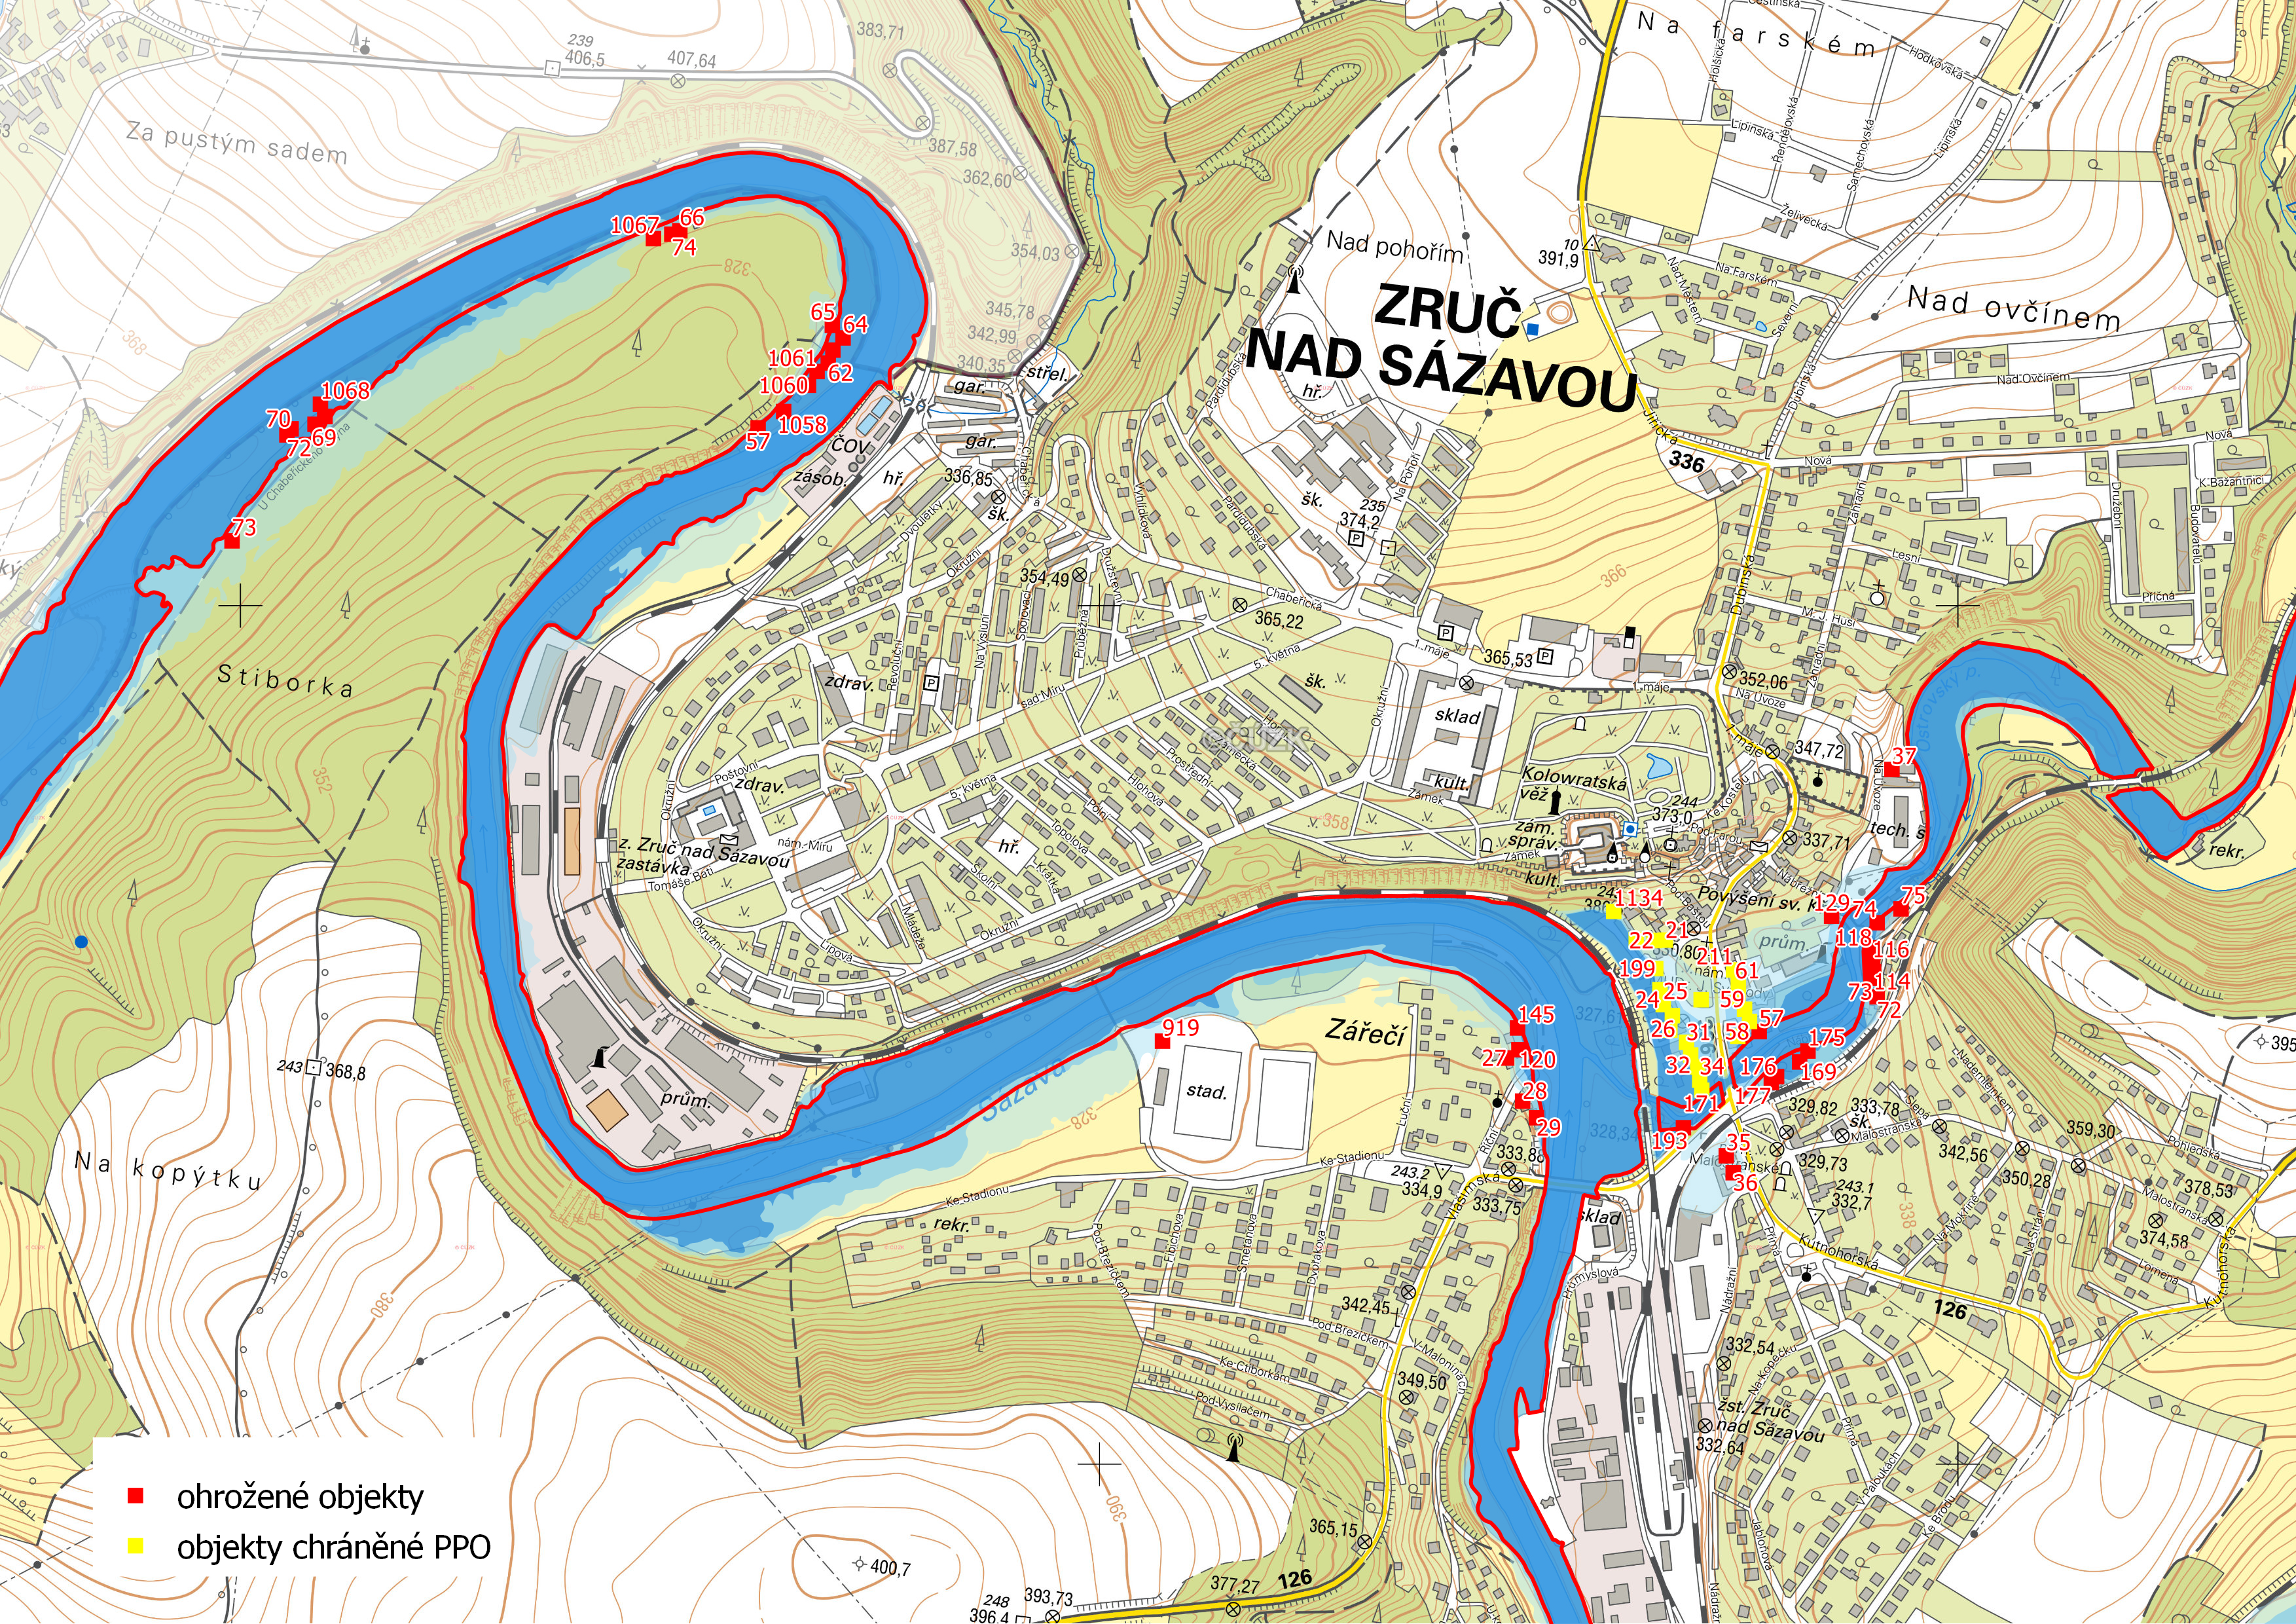 Ohrožené objekty v katastrální části Zruč nad Sázavou s vyznačeným záplavovým územím